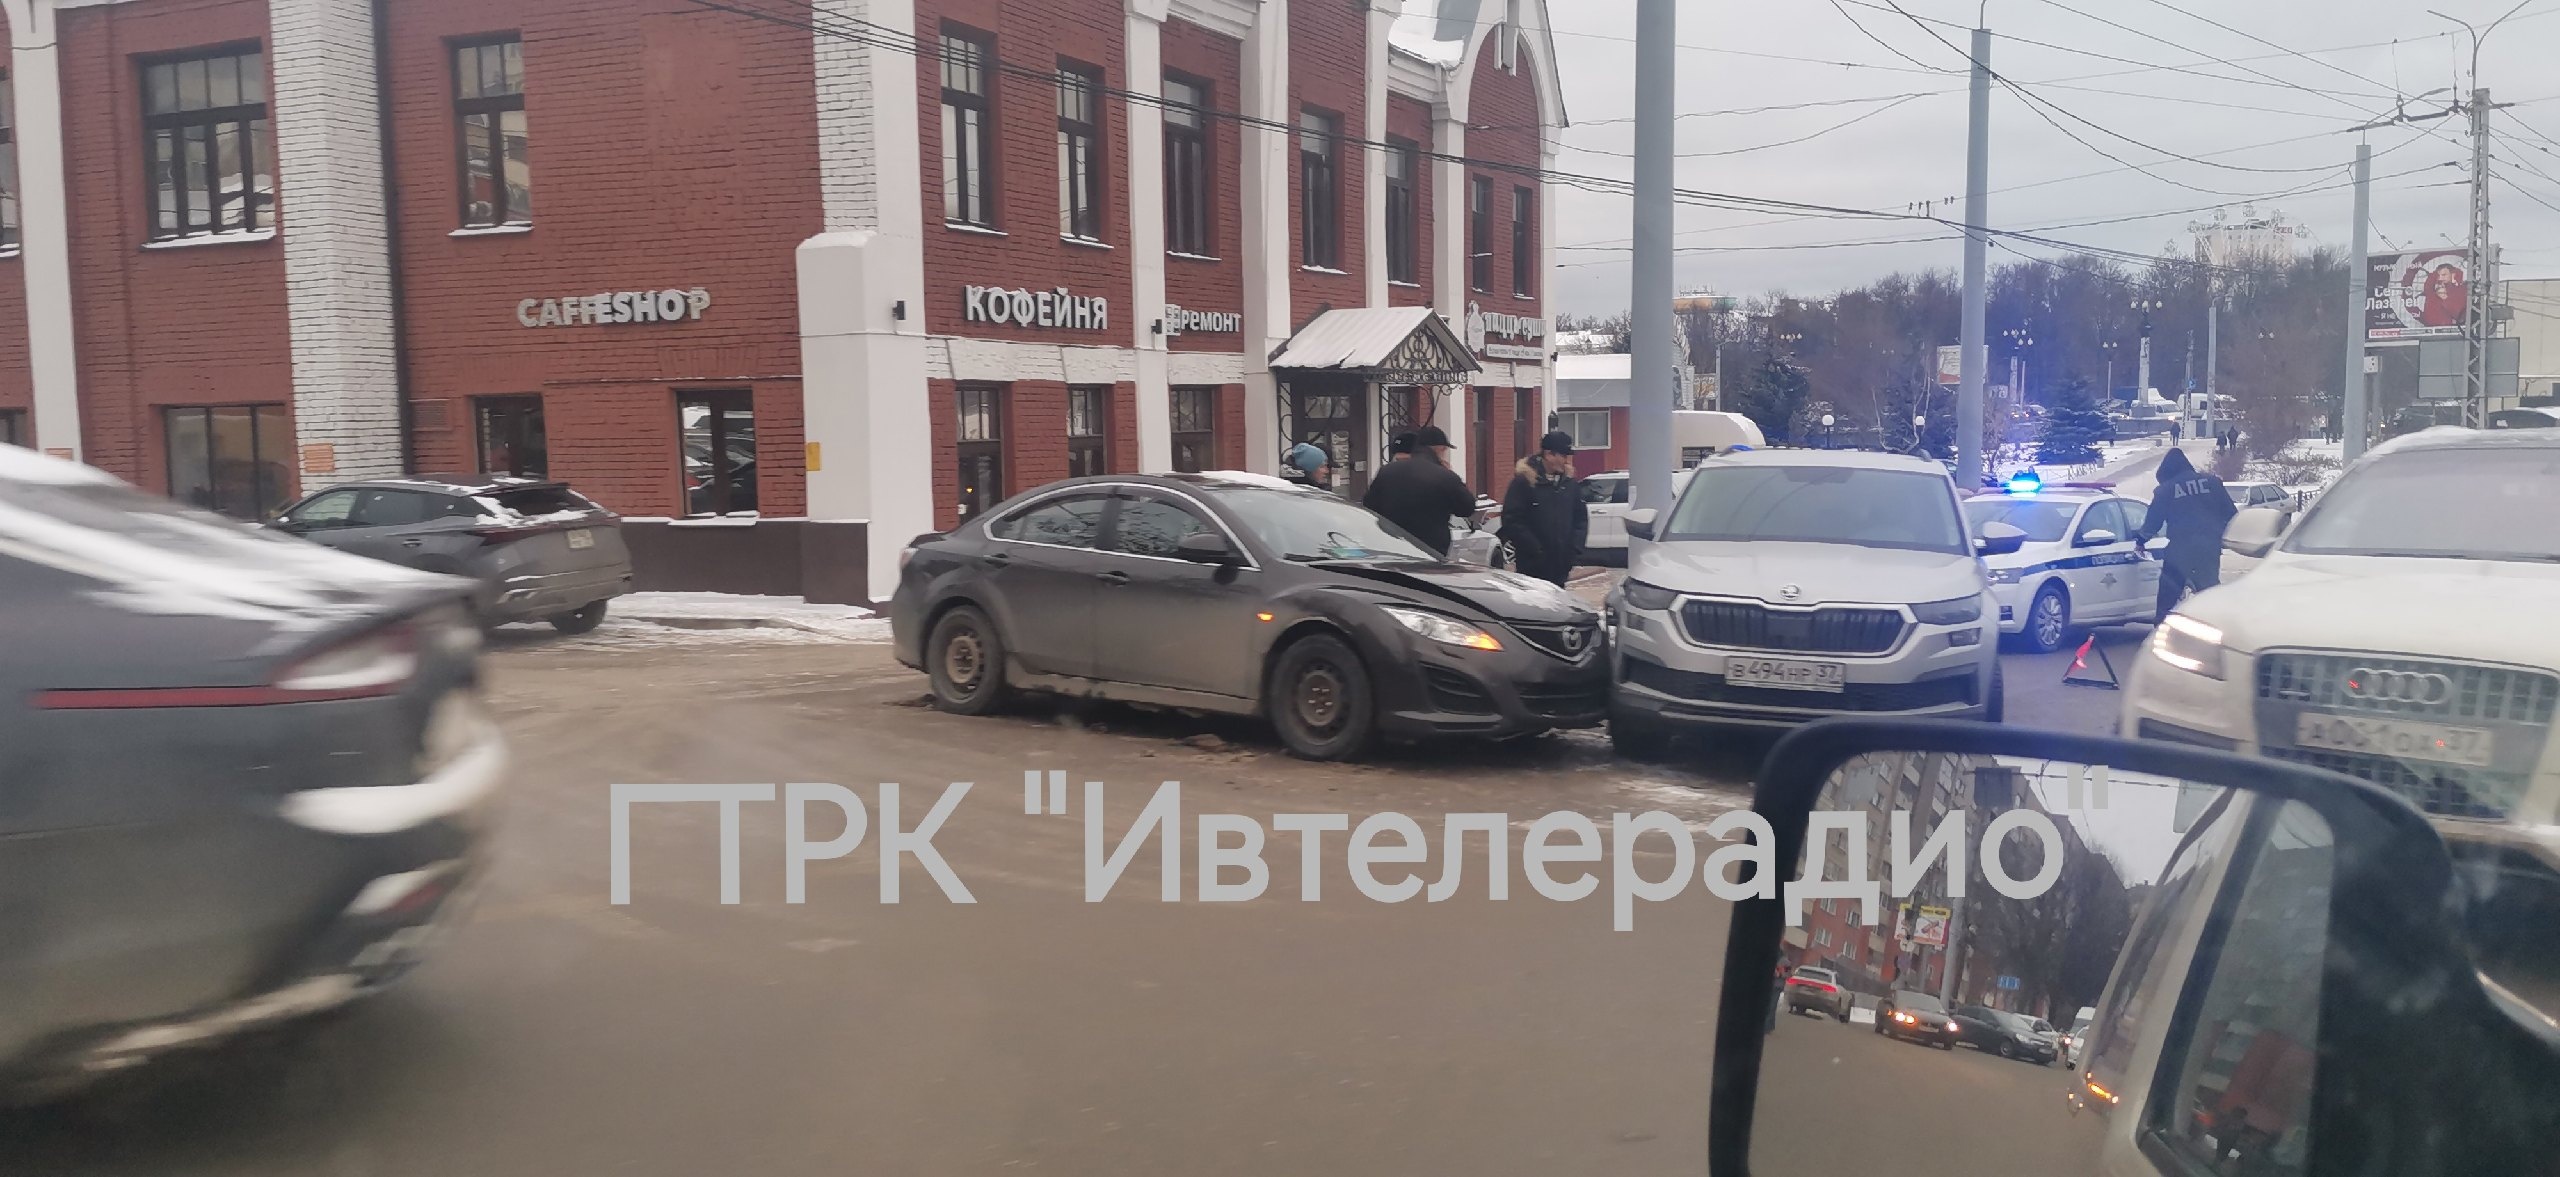 Три аварии на небольшом участке улицы Жарова парализовали движение на прилегающих улицах Иванова